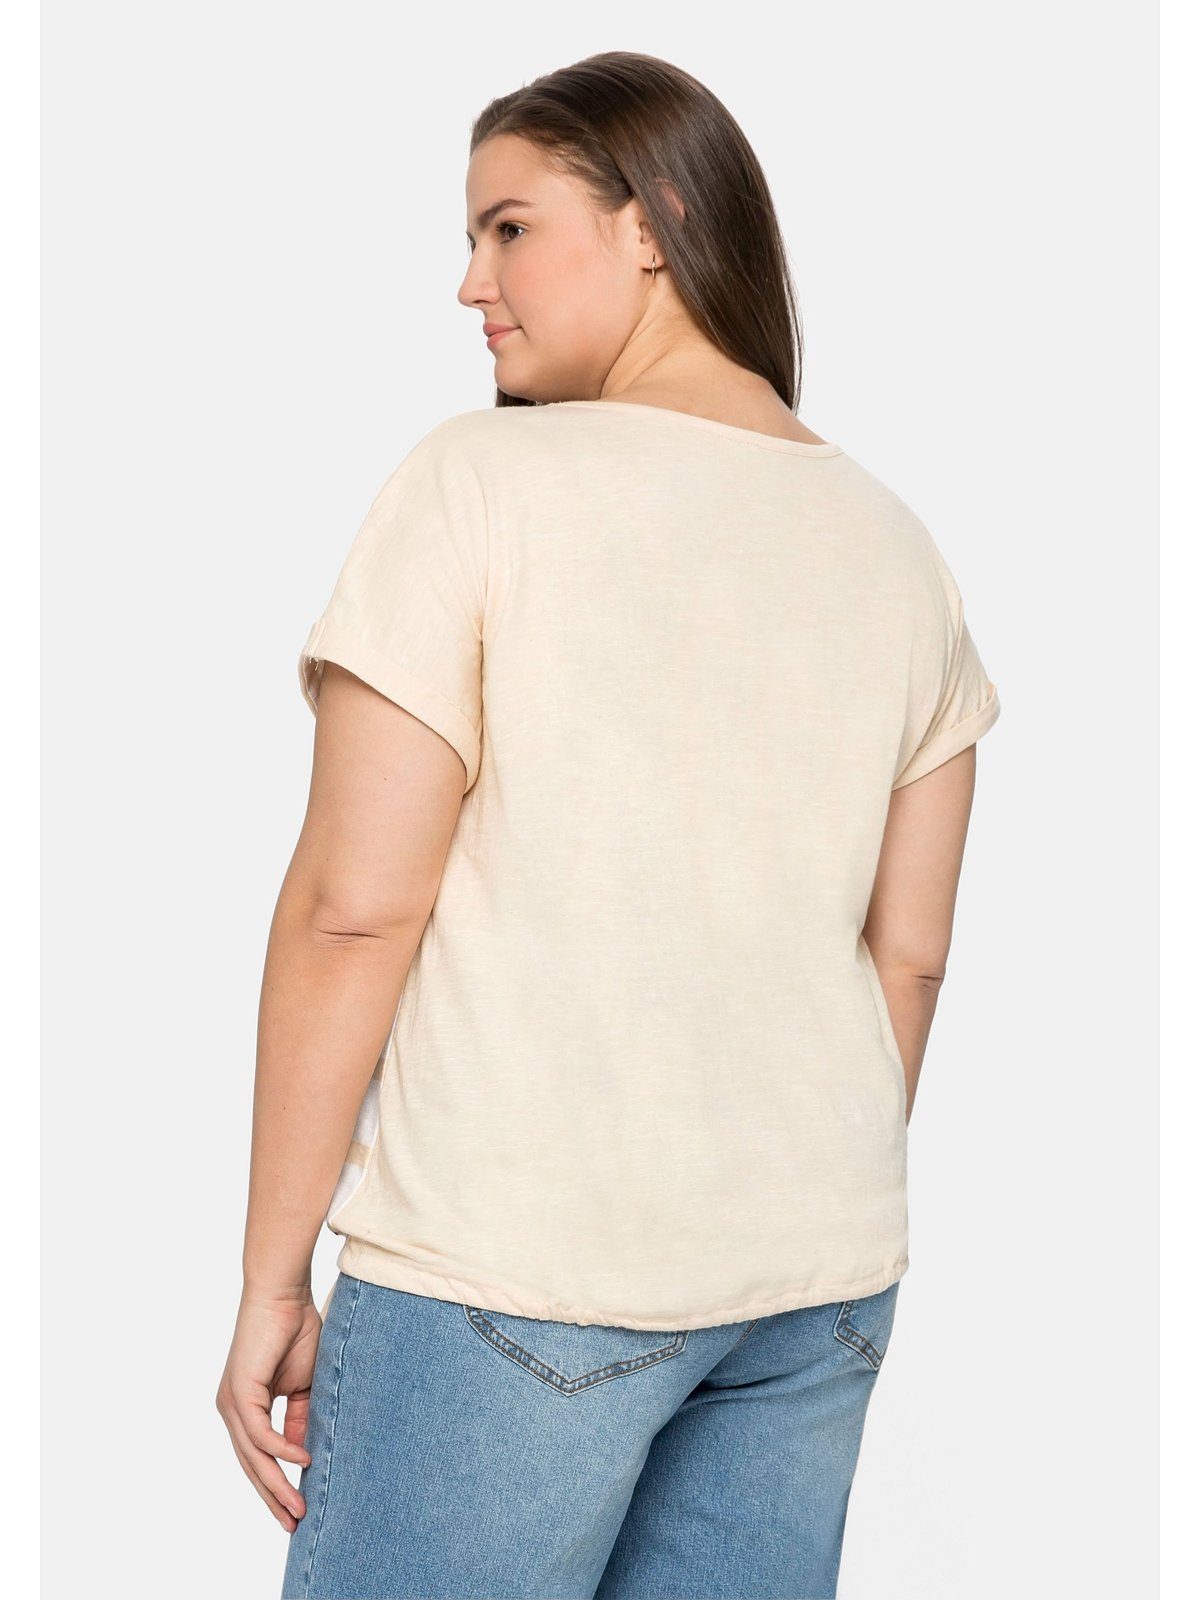 Sheego T-Shirt Große Größen mit Tunnelzug vorn Streifenprint und natur